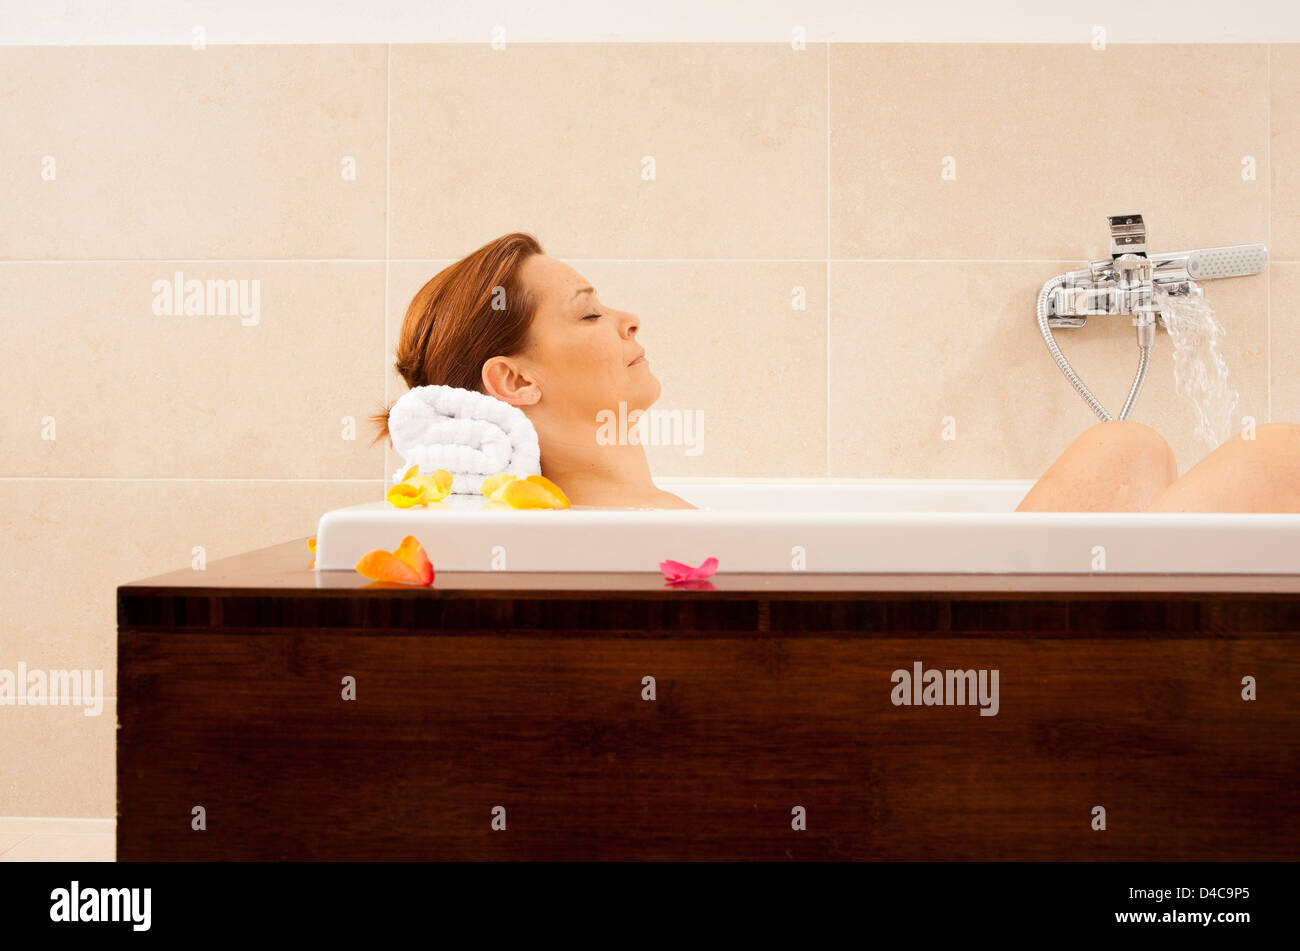 Woman taking a bath Stock Photo